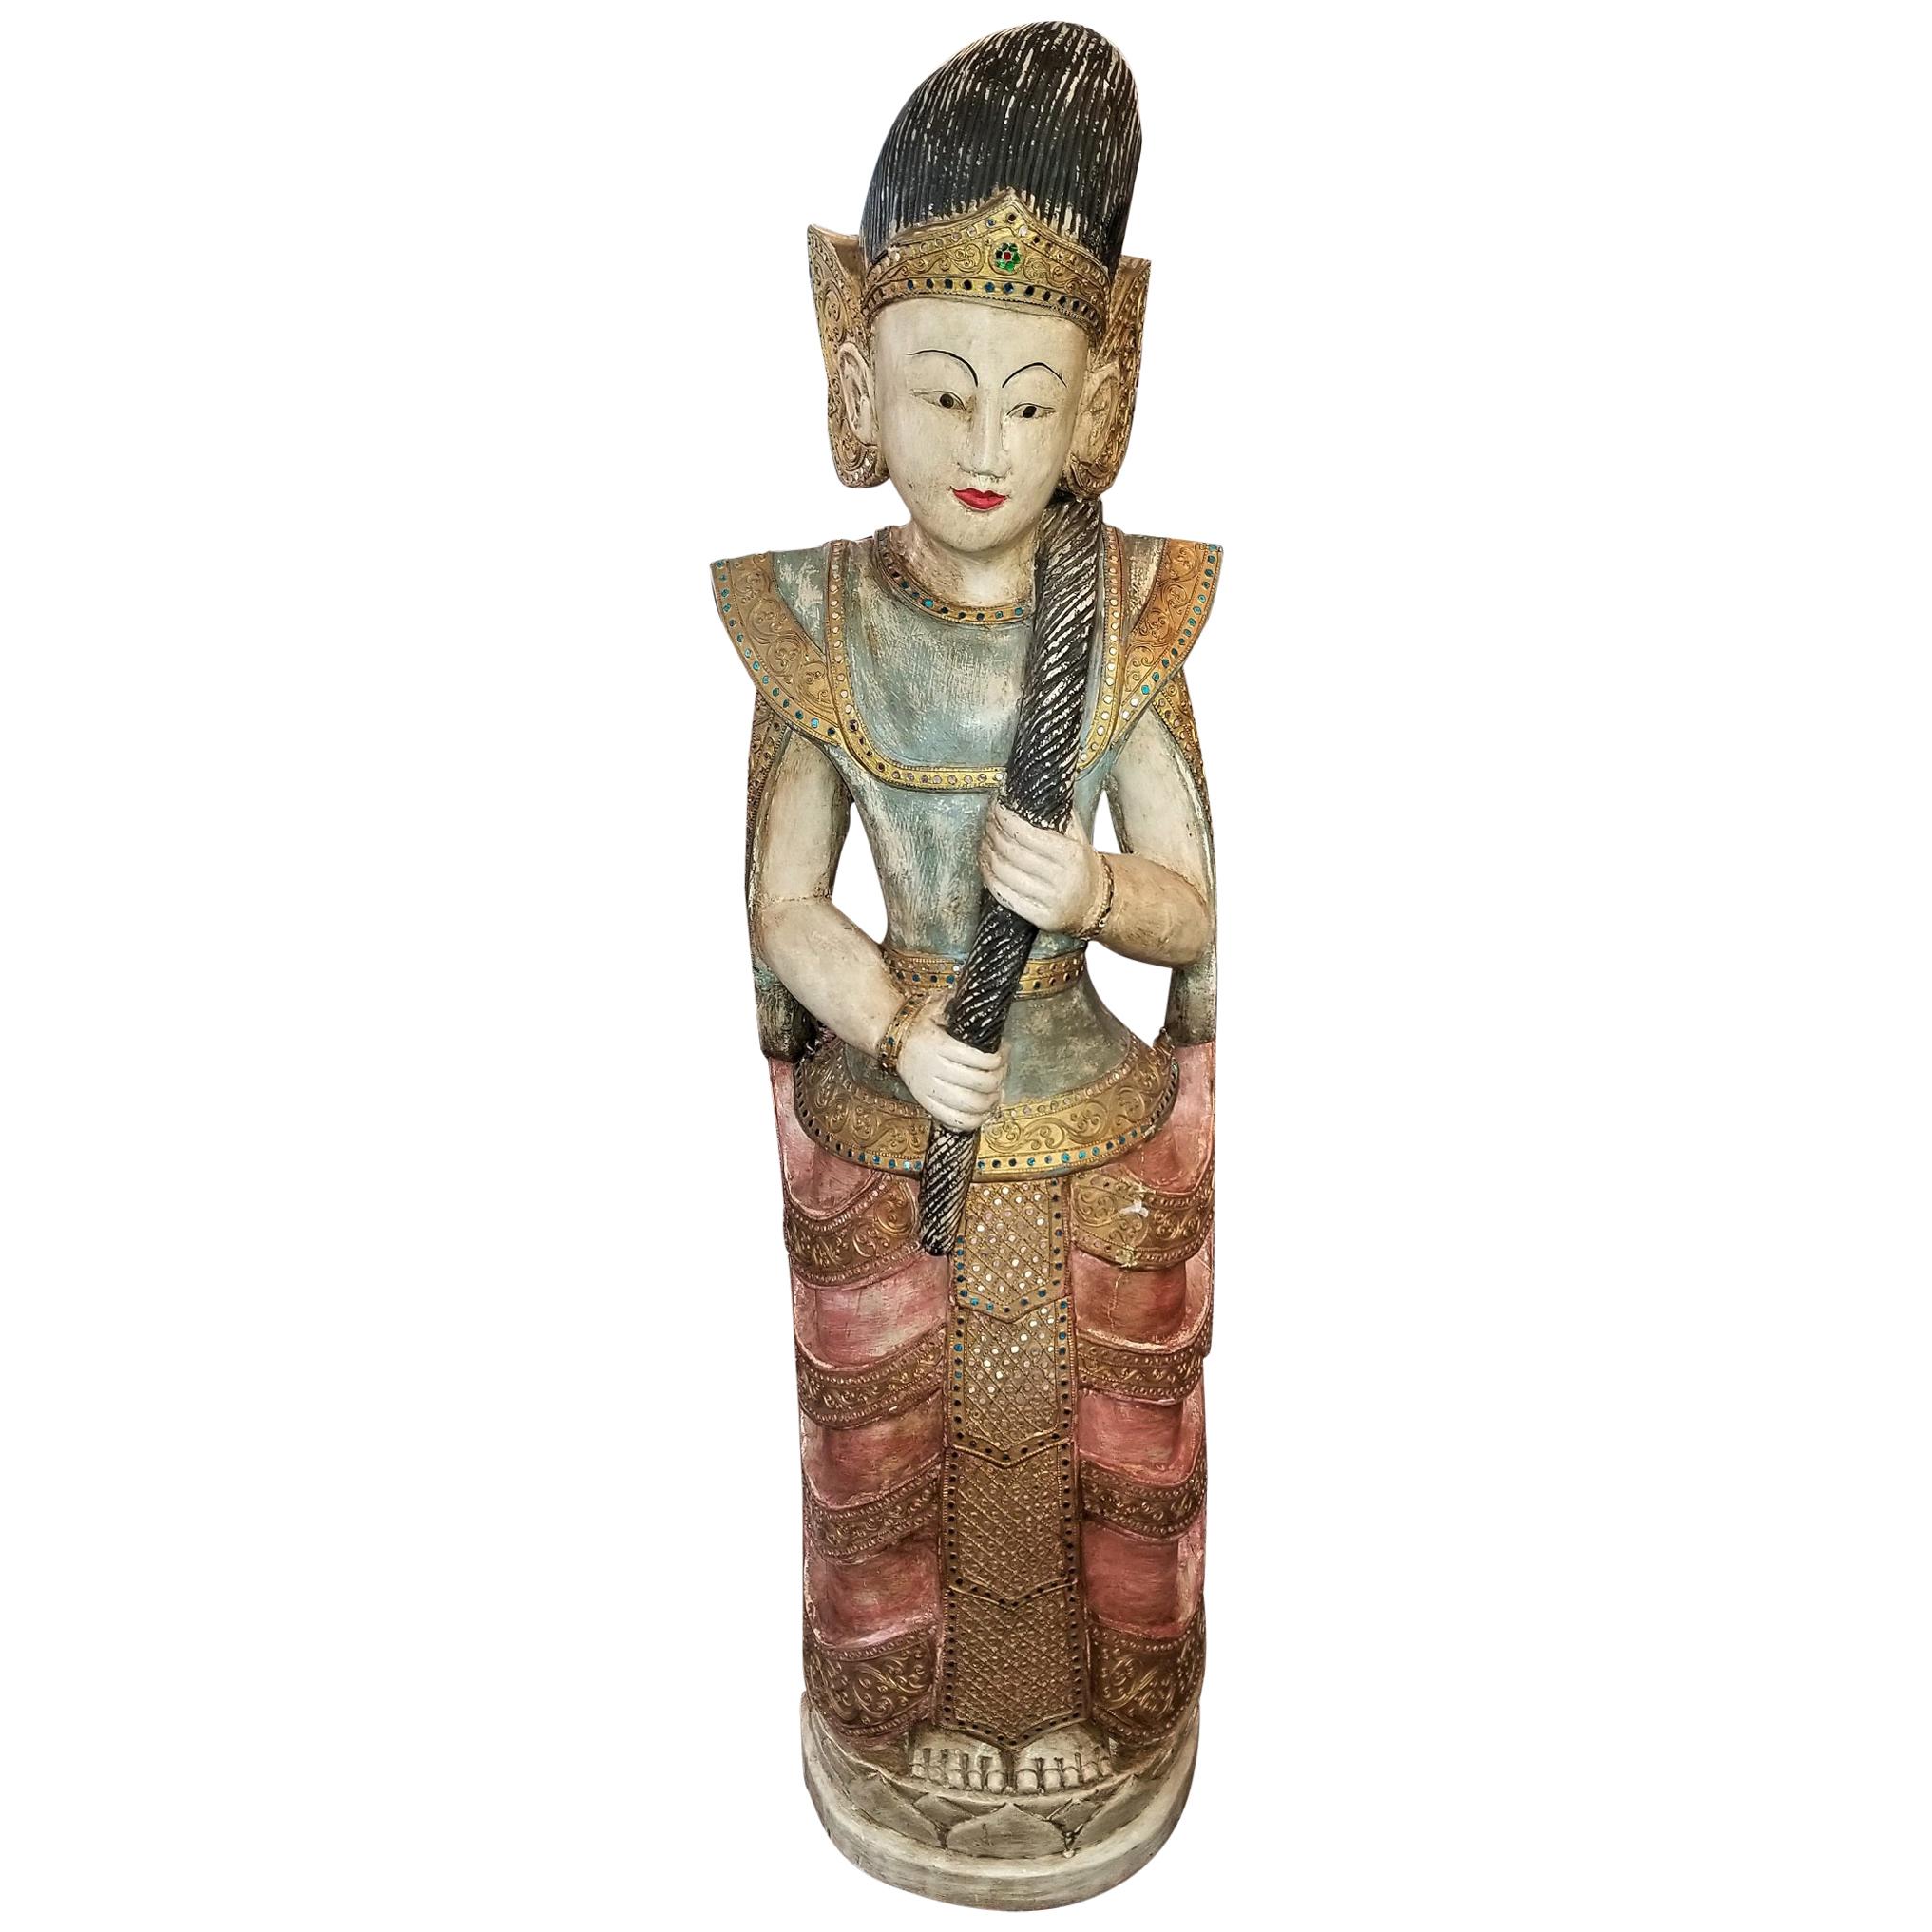 Thailändische Göttin des frühen 20. Jahrhunderts, polychrome Statue